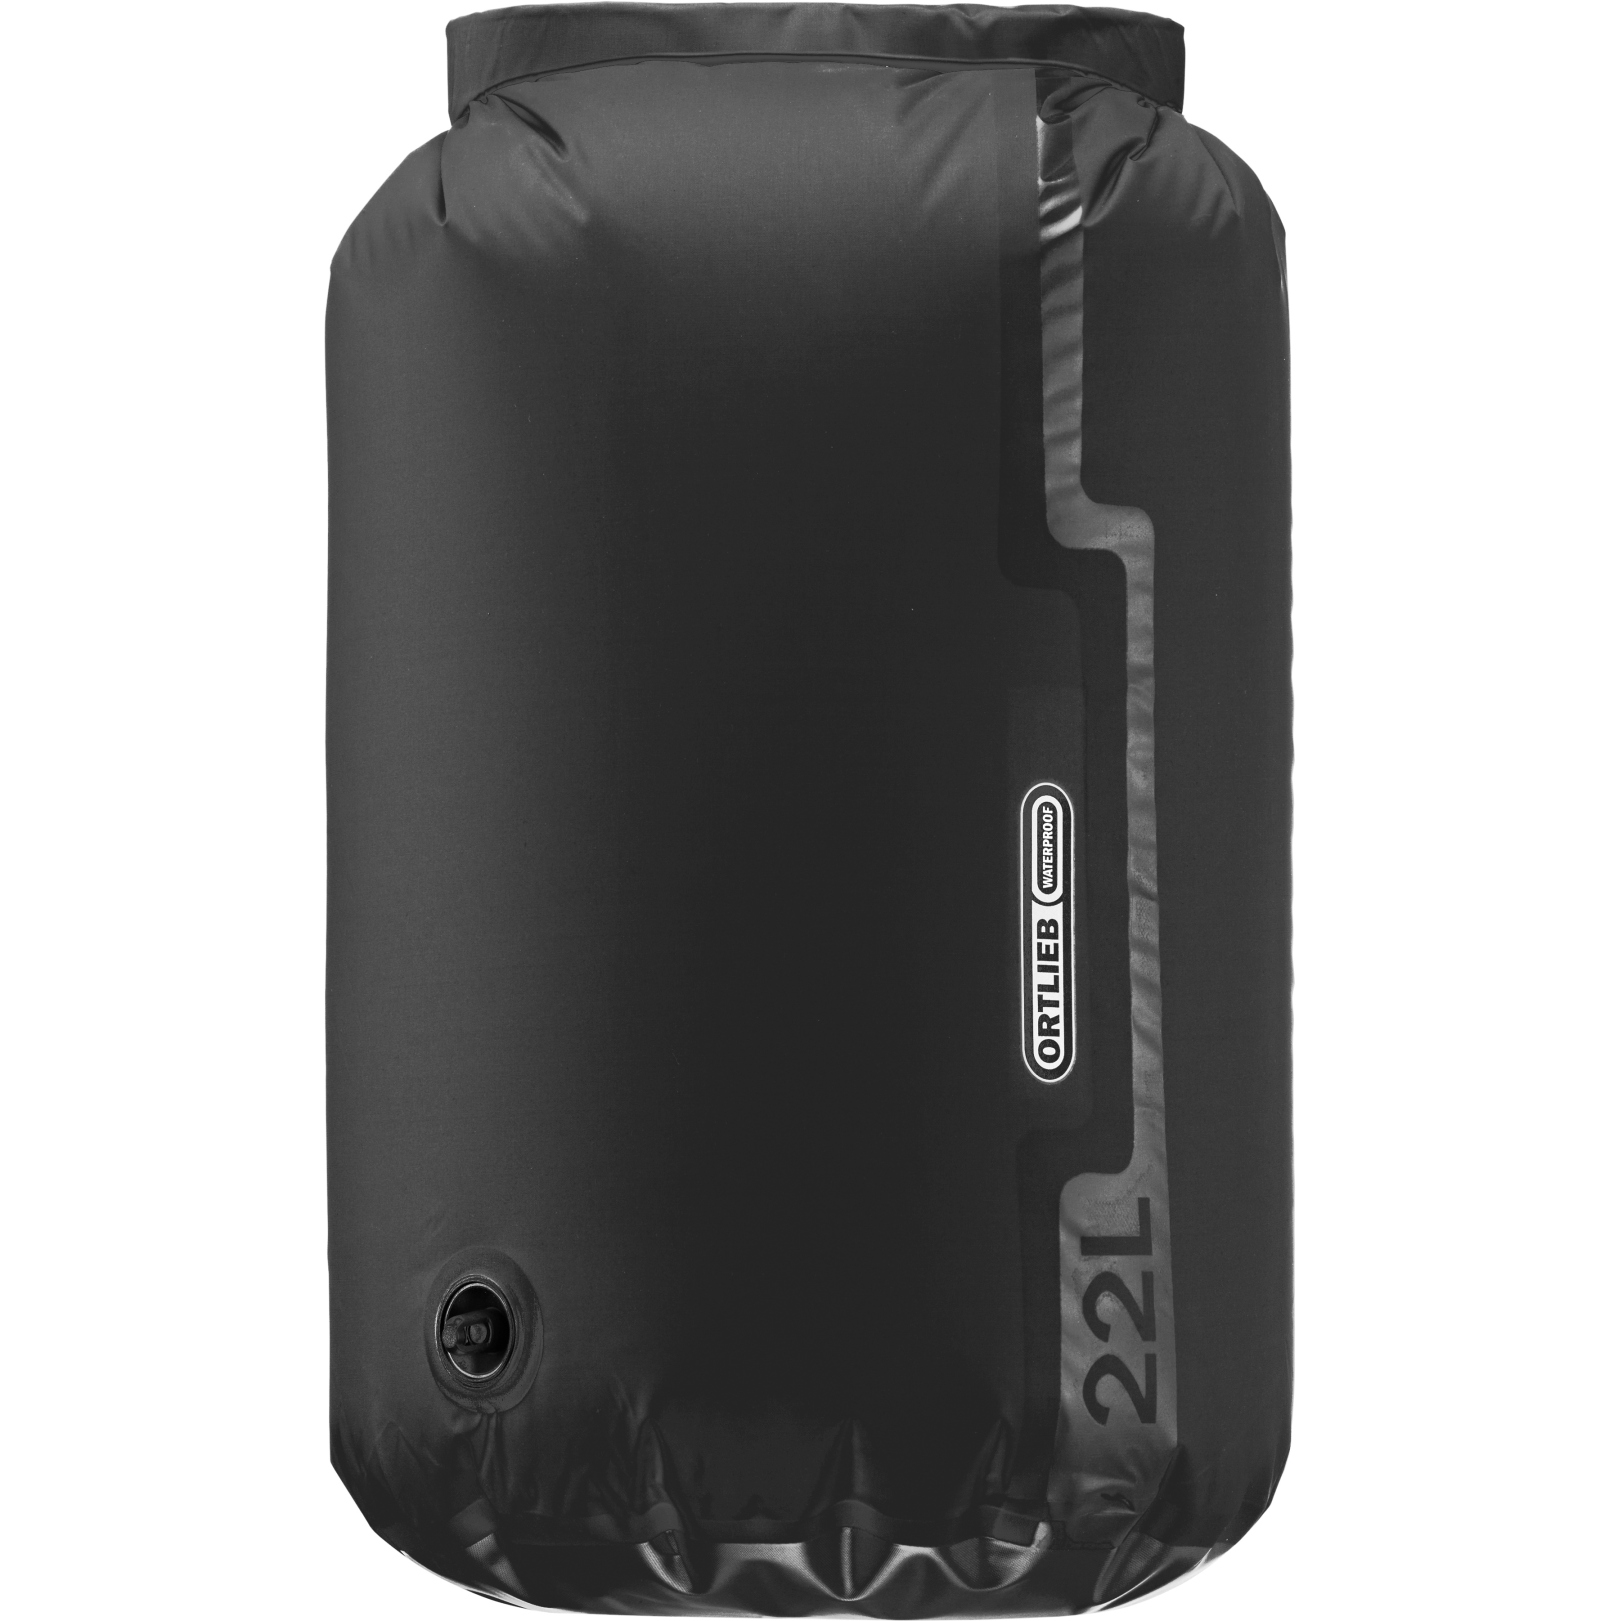 Productfoto van ORTLIEB Dry-Bag Light Valve 22L - zwart